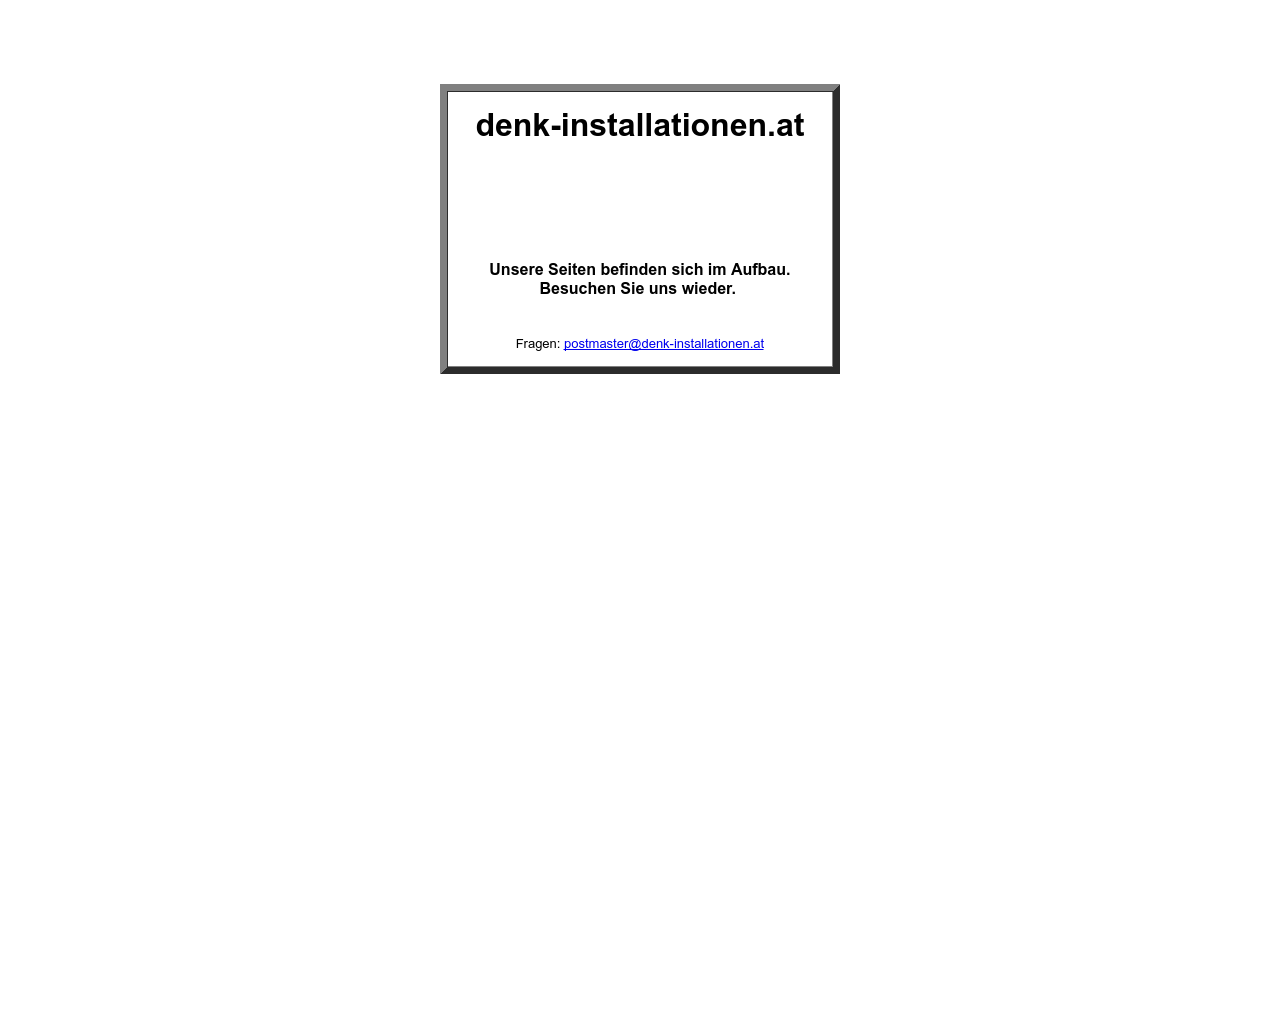 Bild Website denk-installationen.at in 1280x1024